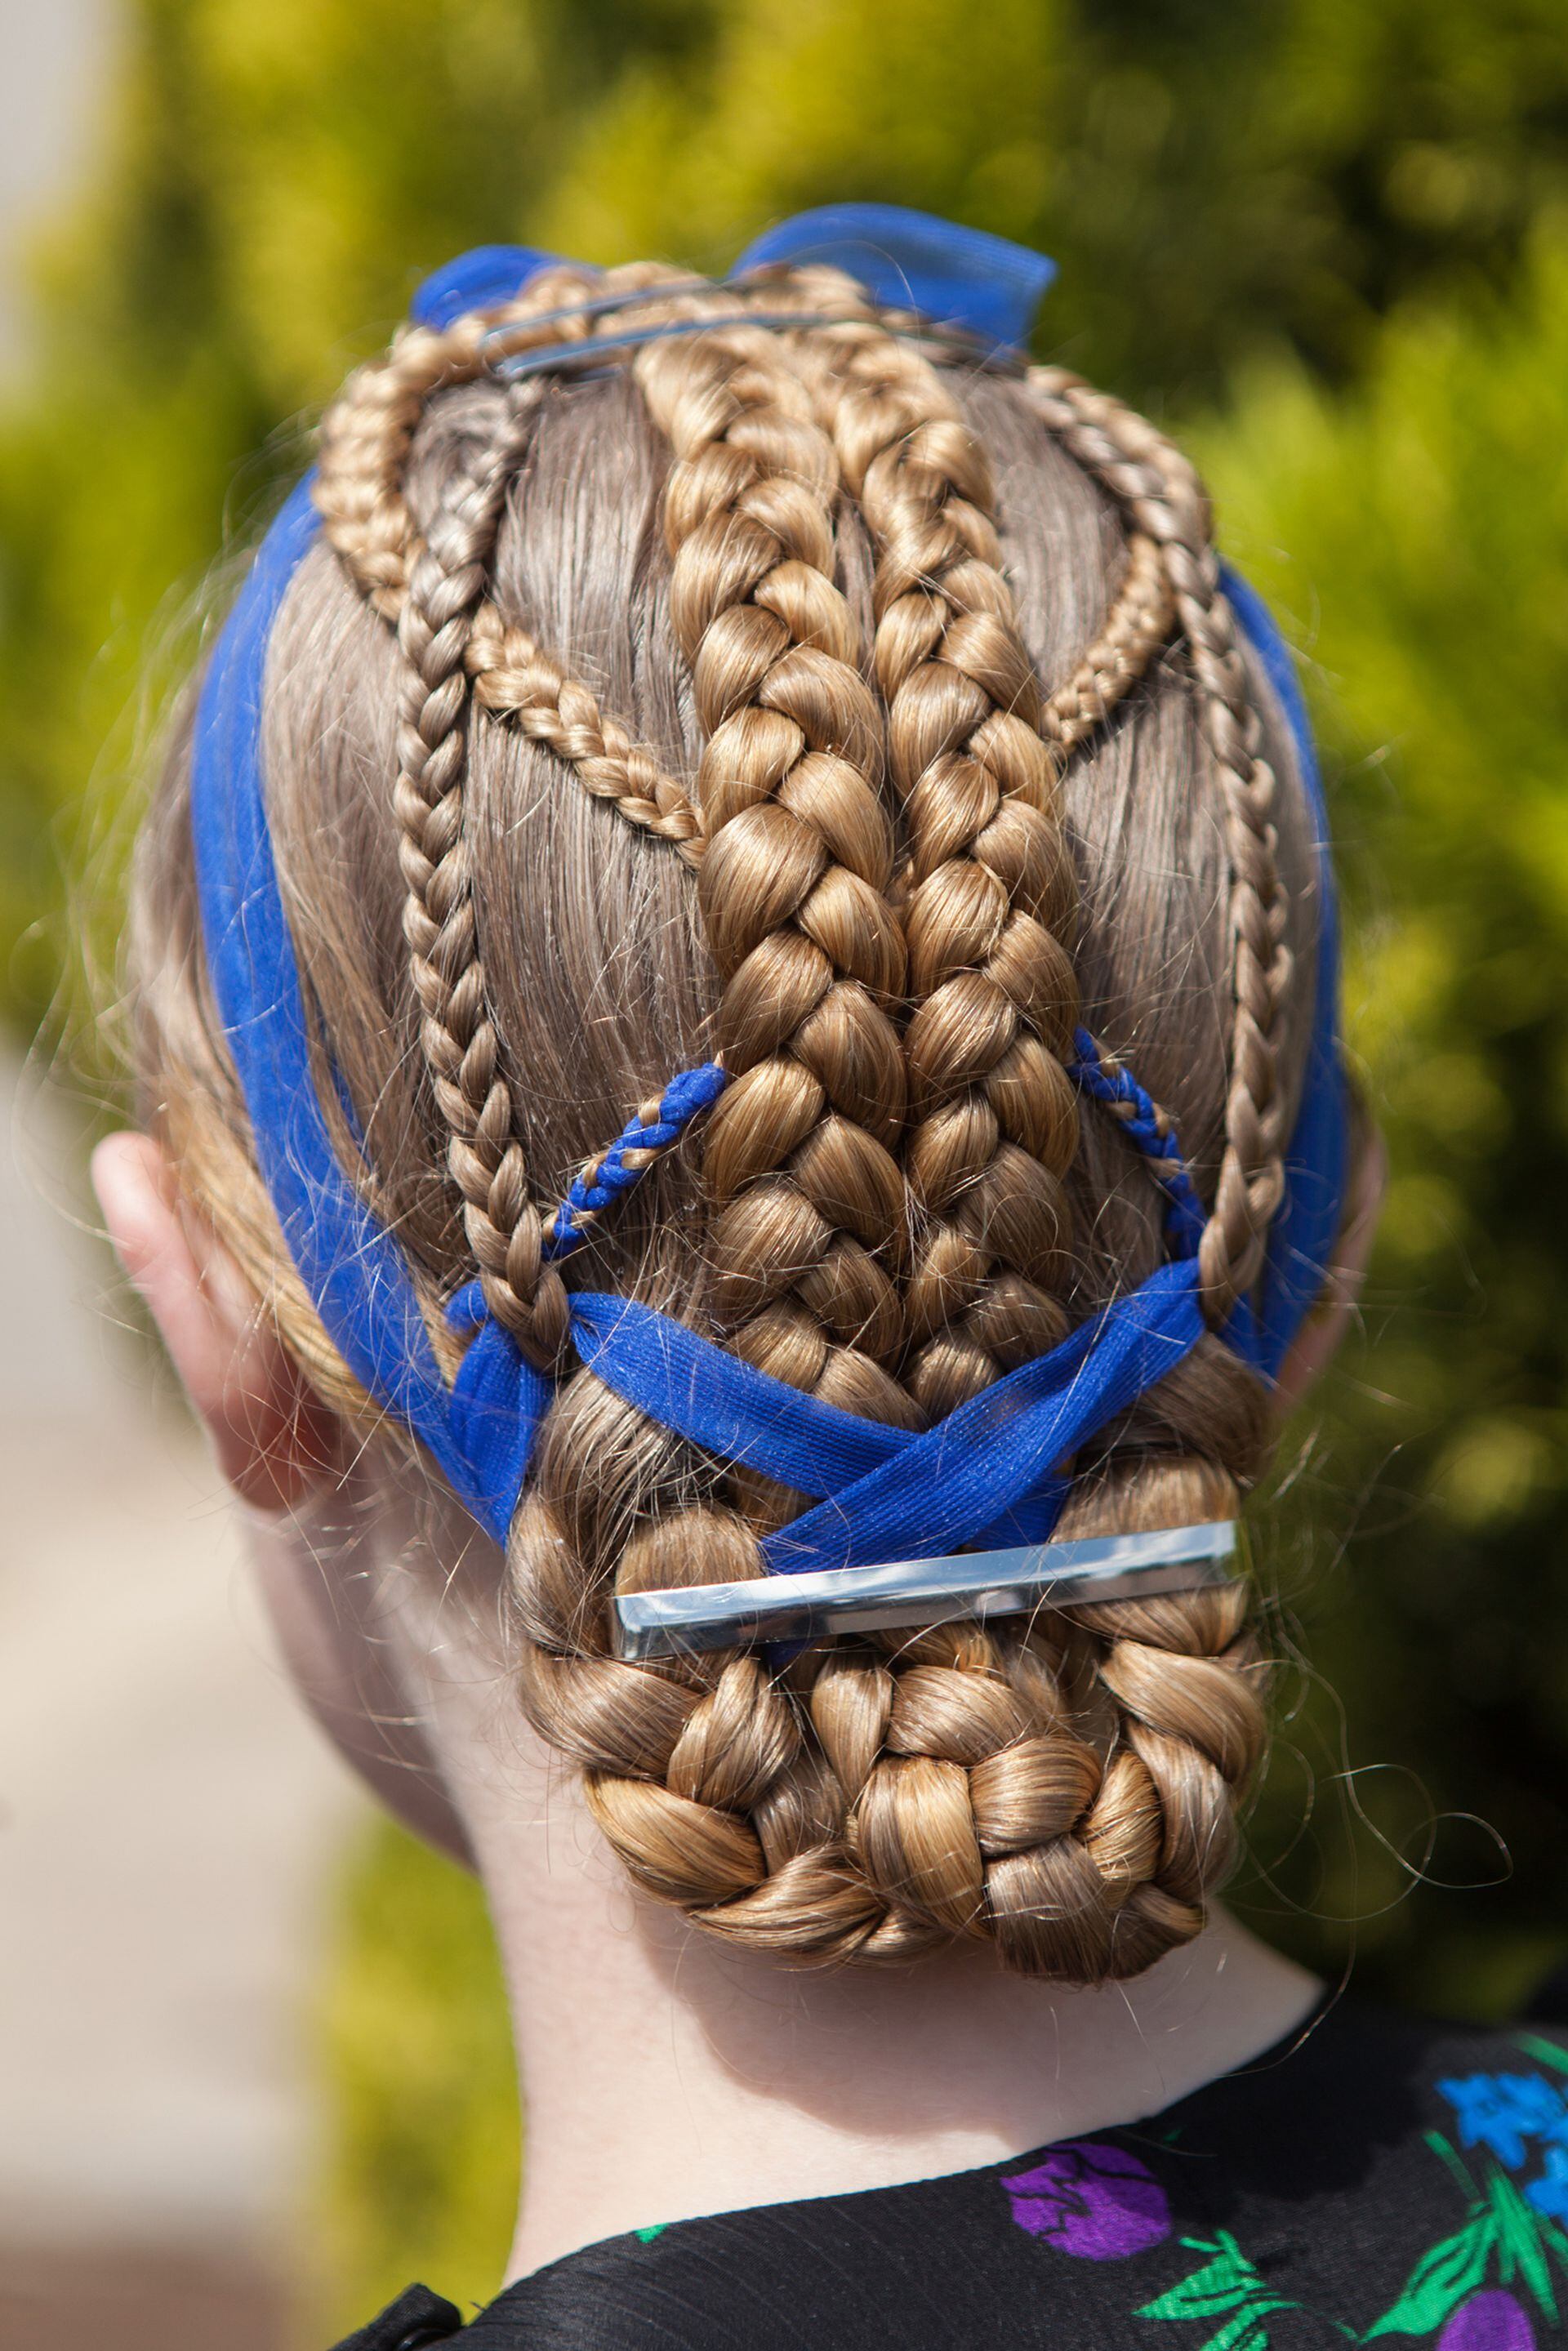 Peinado de trenzas en una niña menonita.